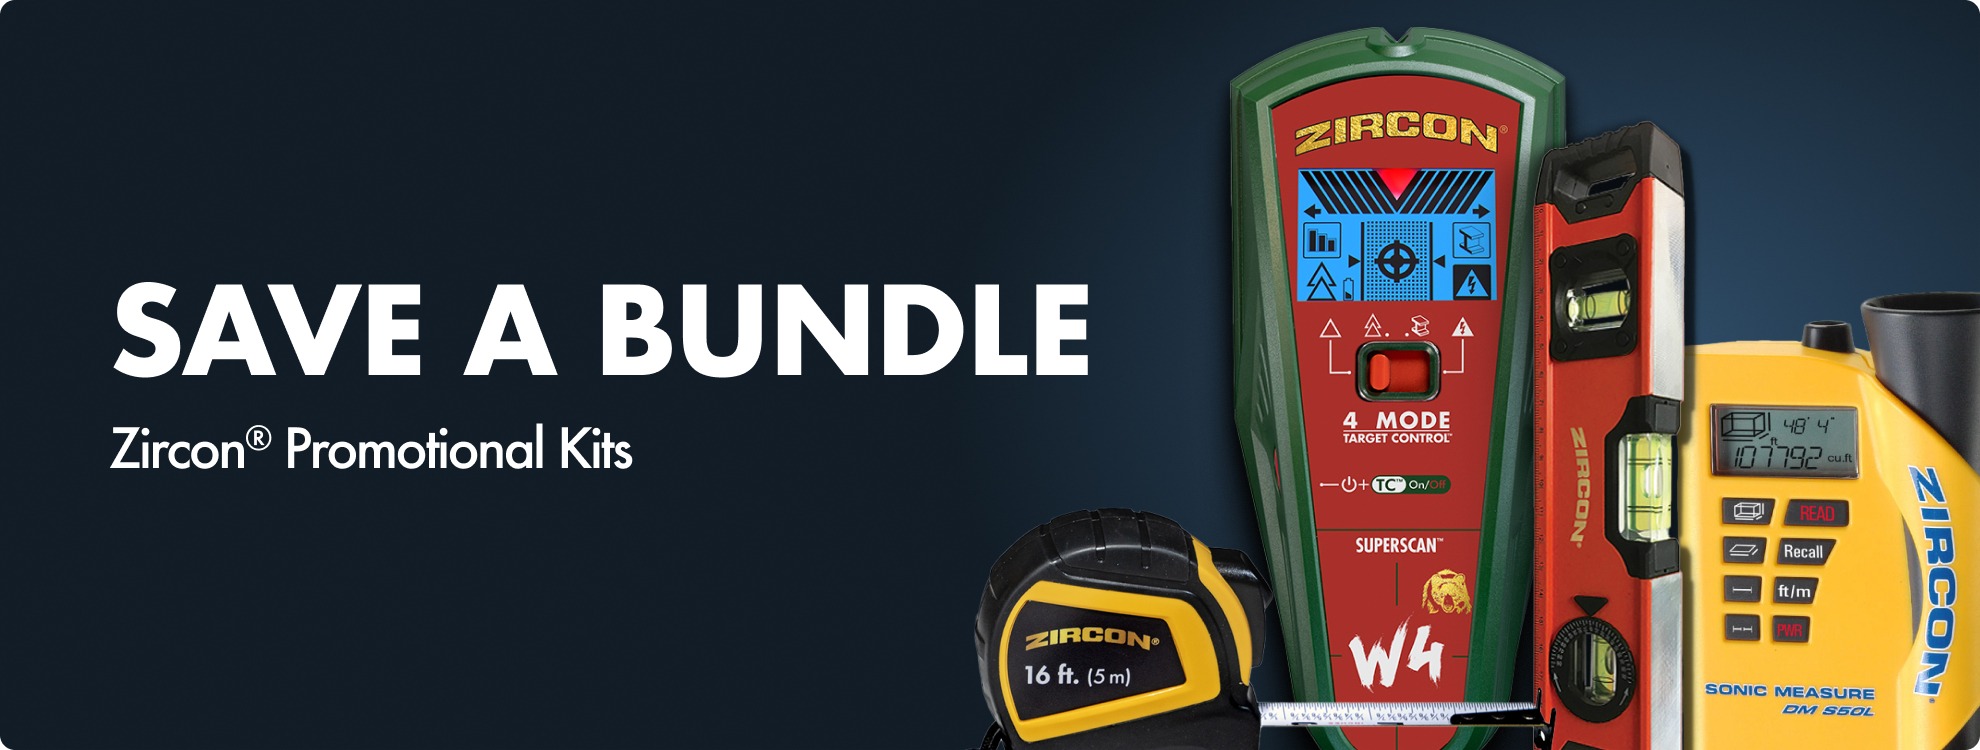 Zircon promotional kits: save a bundle